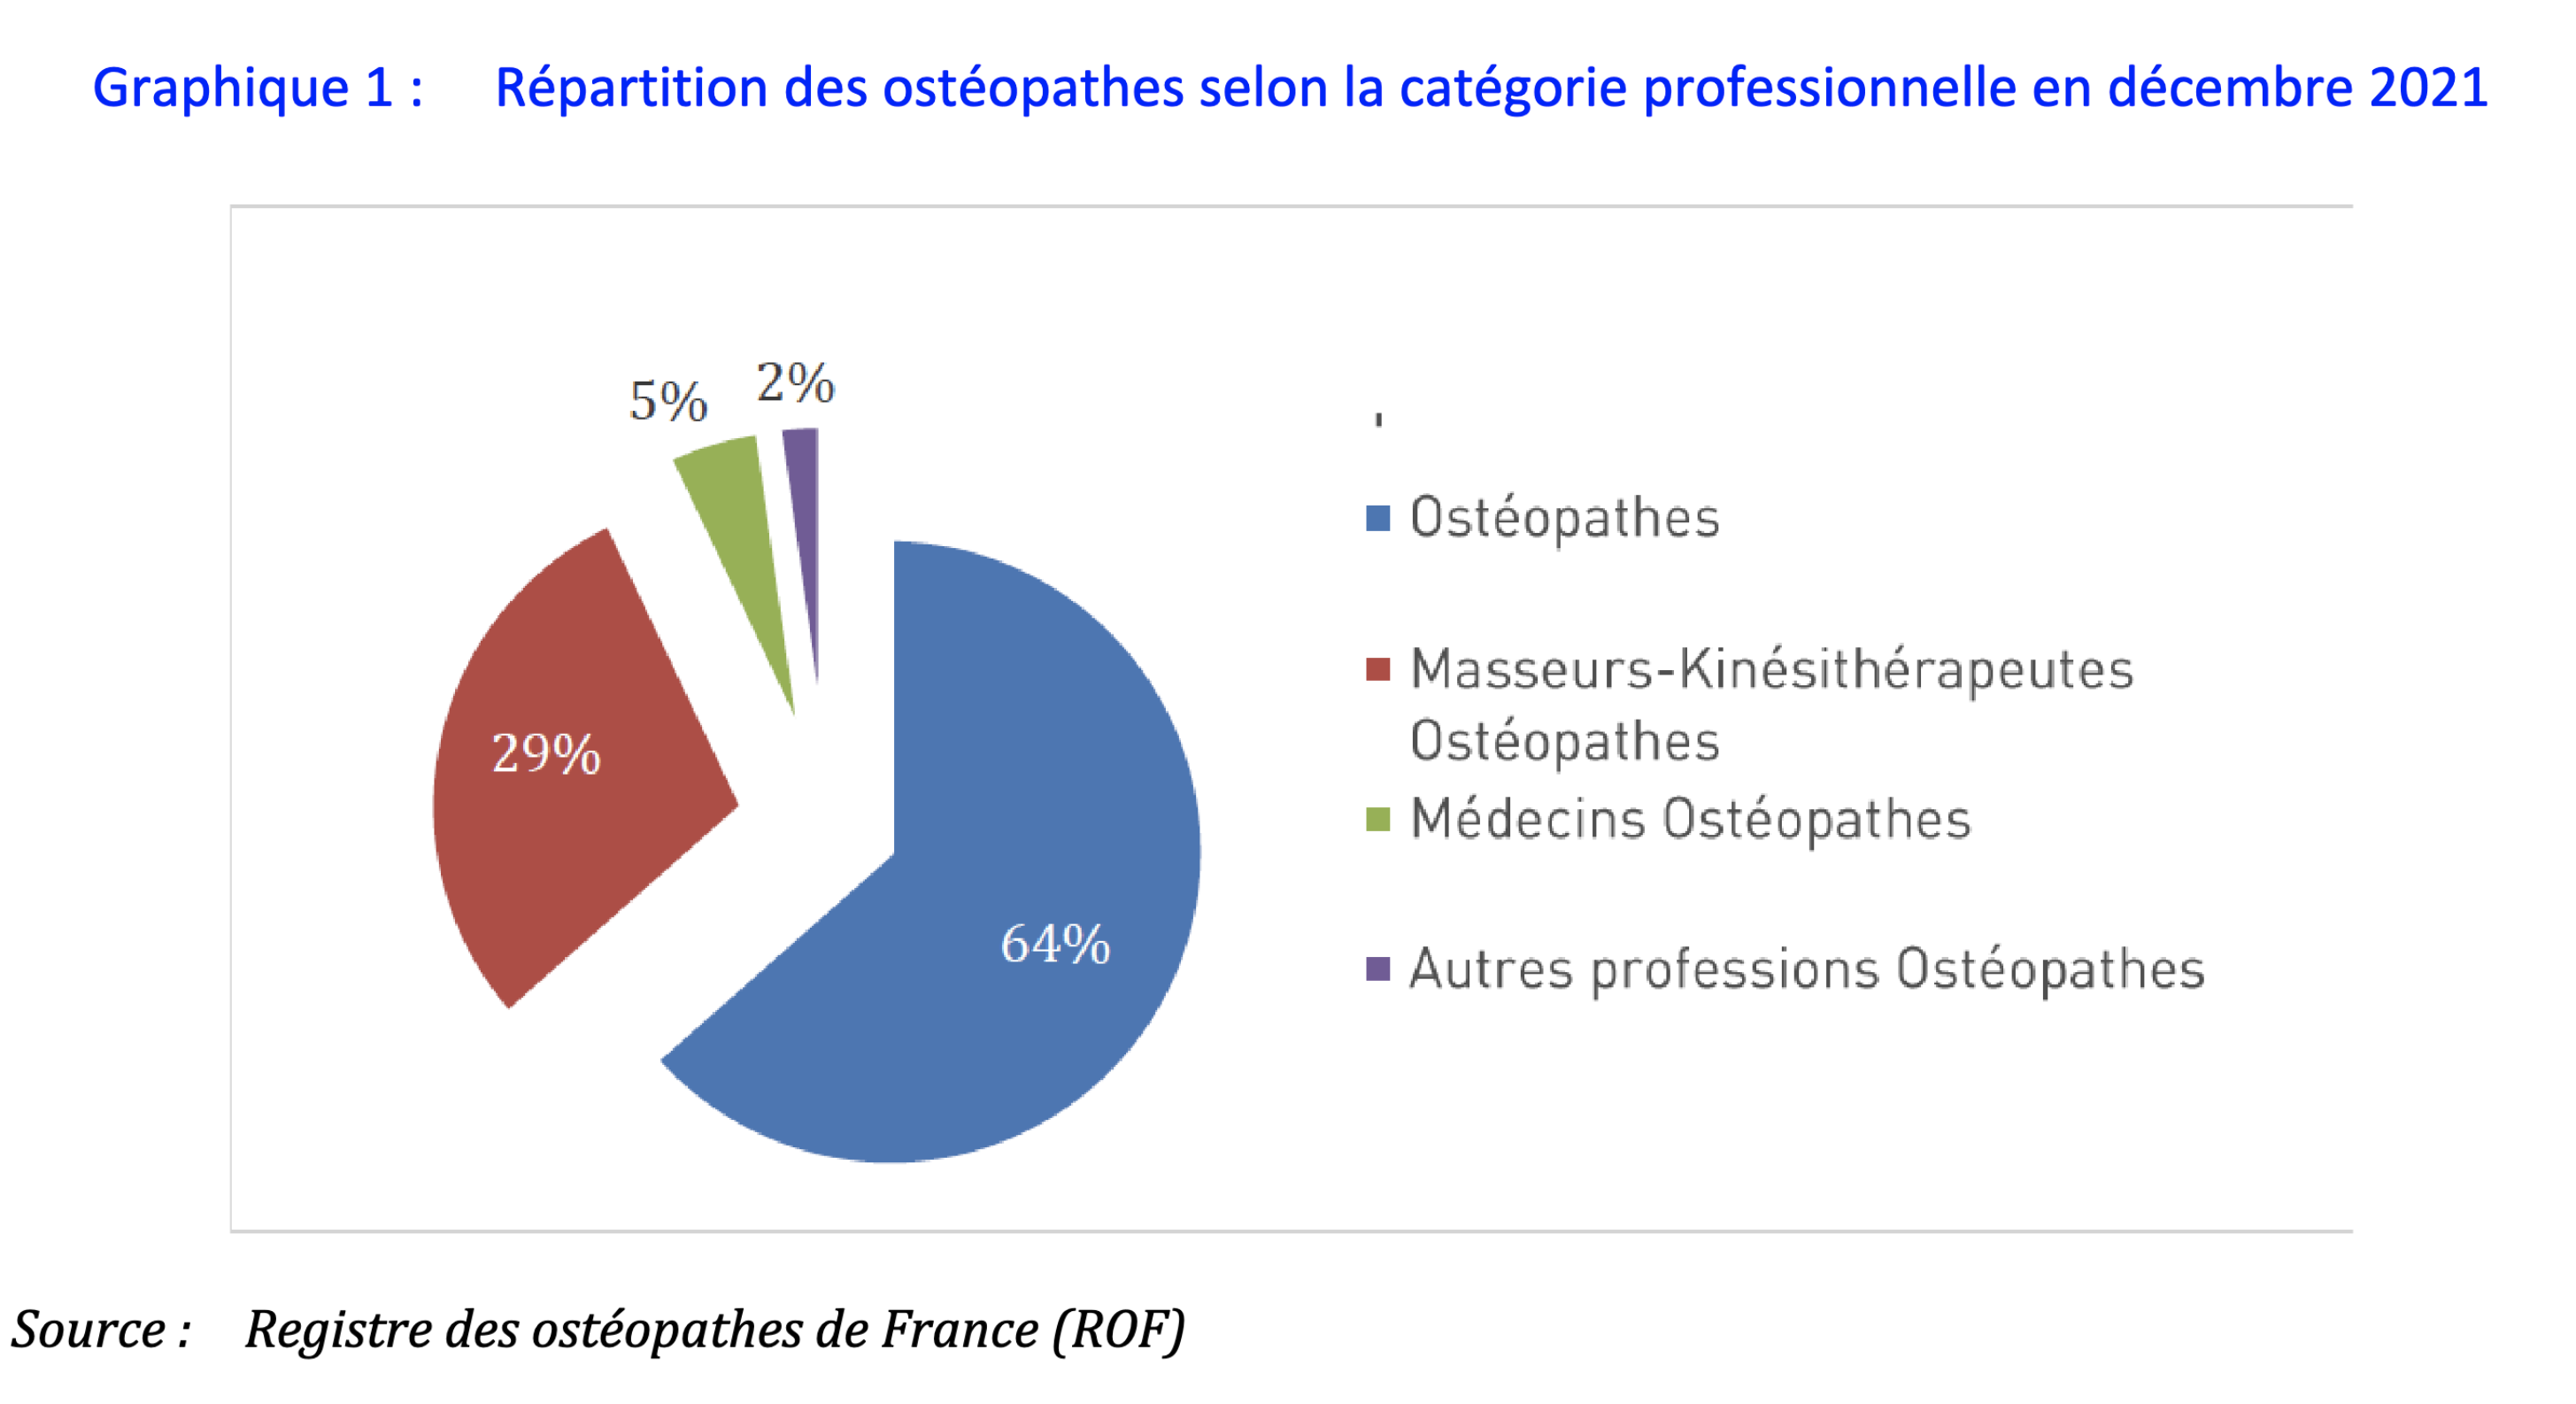 Répartition des ostéopathes selon la catégorie professionnelle en décembre 2021